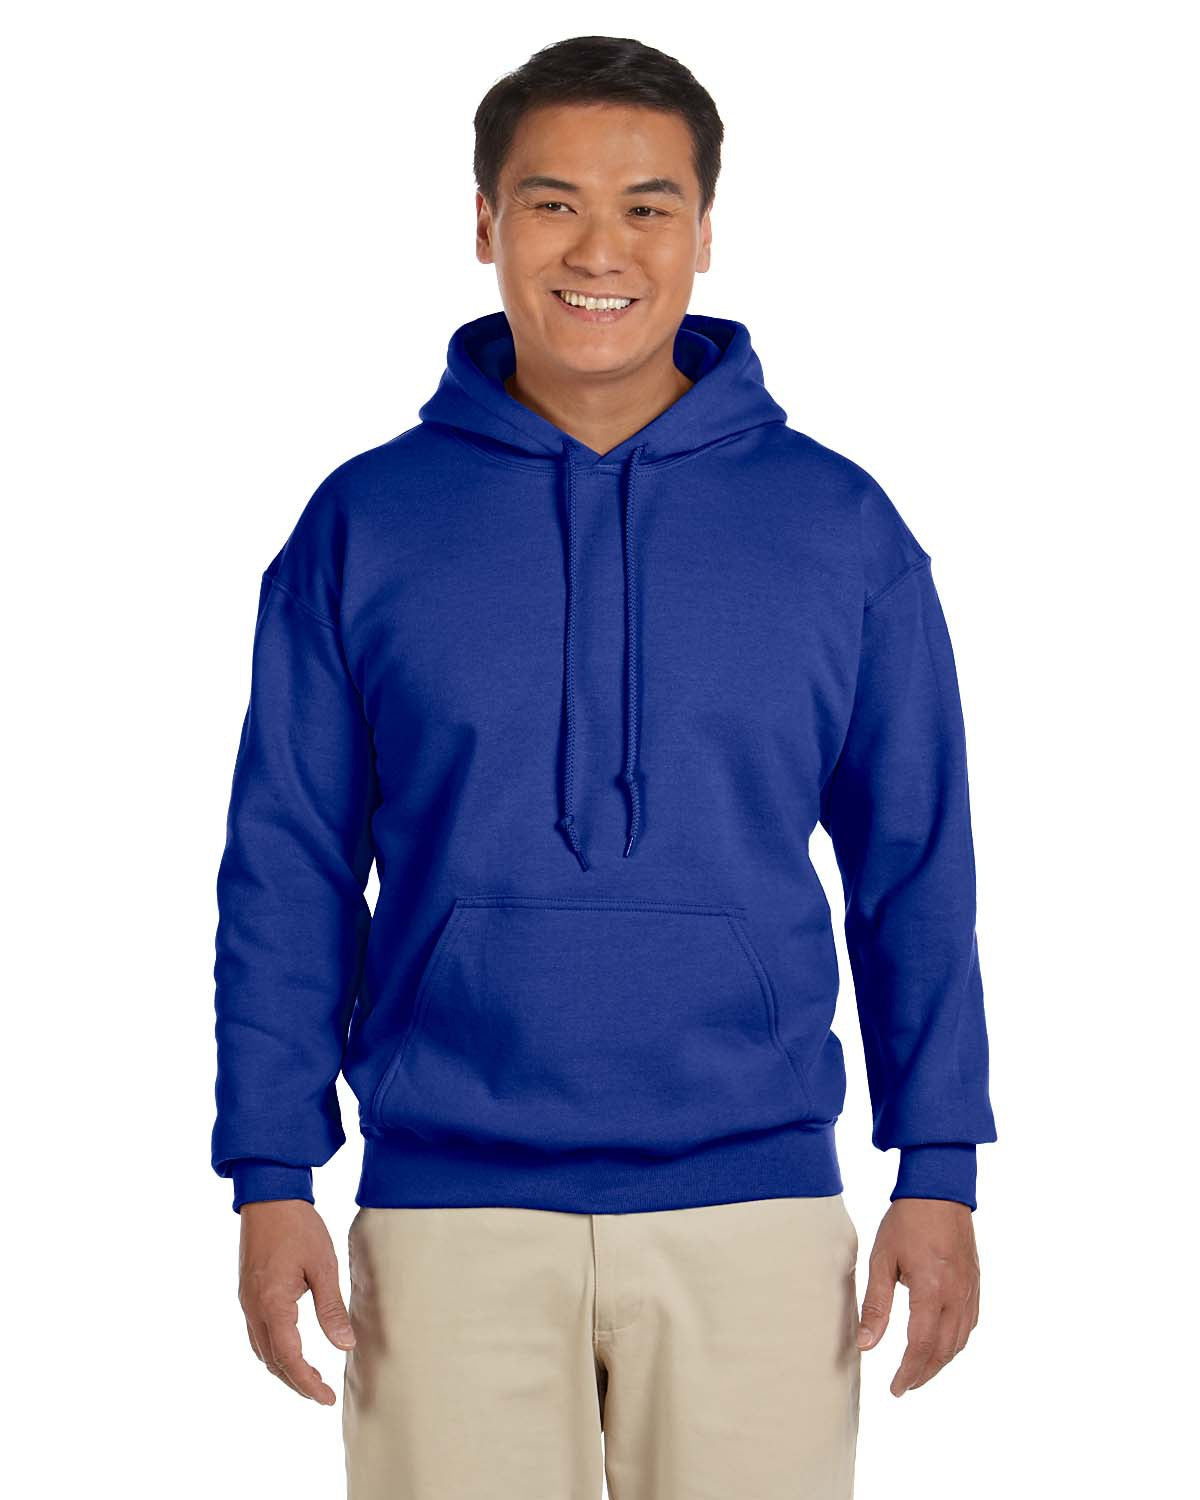 Falcon Fan Basic Sweatshirt